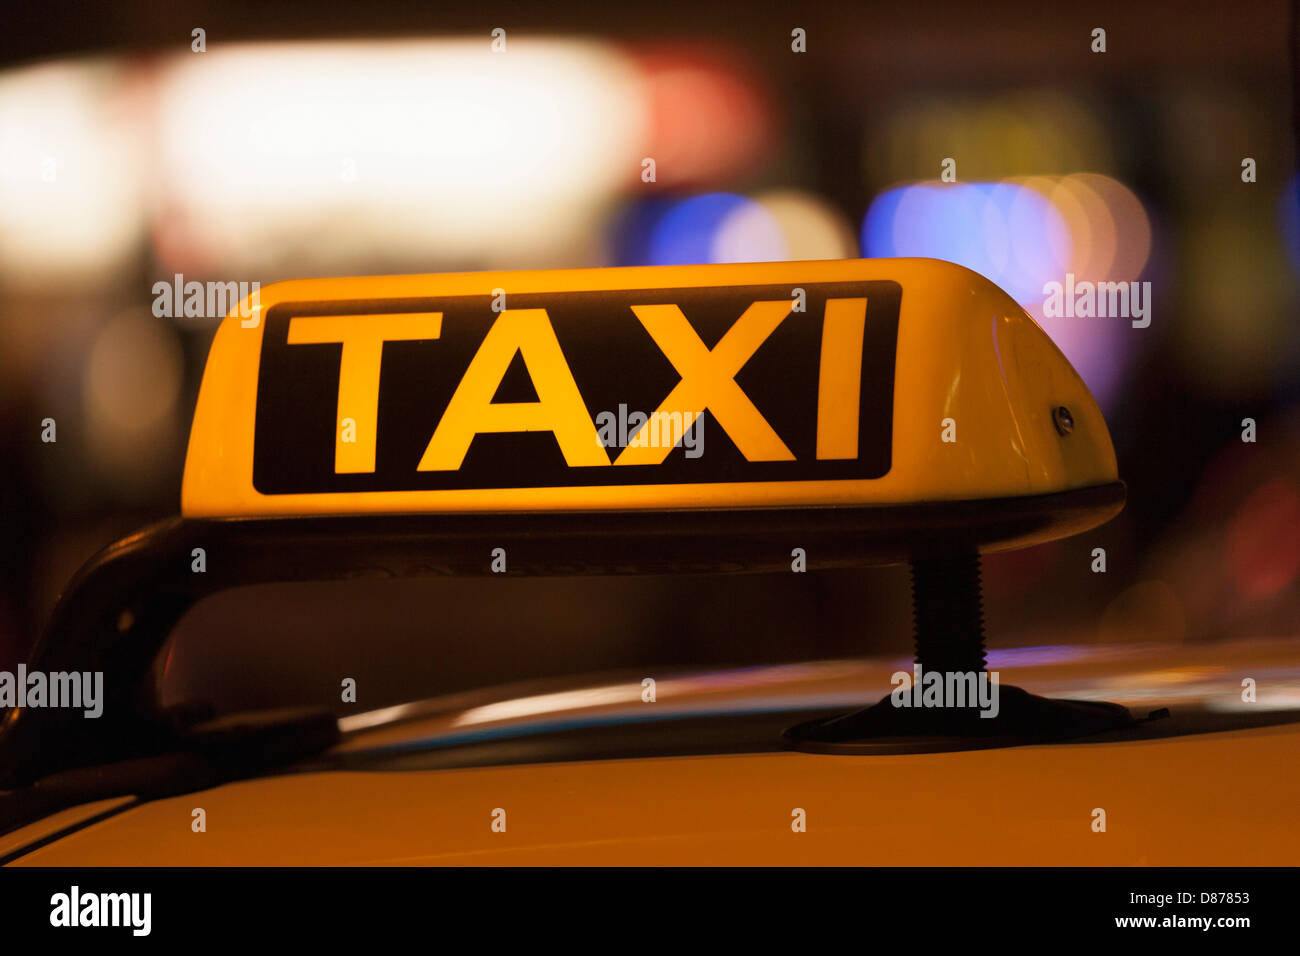 Germany, Bavaria, Munich, un témoin lumineux sur taxi montrant la disponibilité Banque D'Images